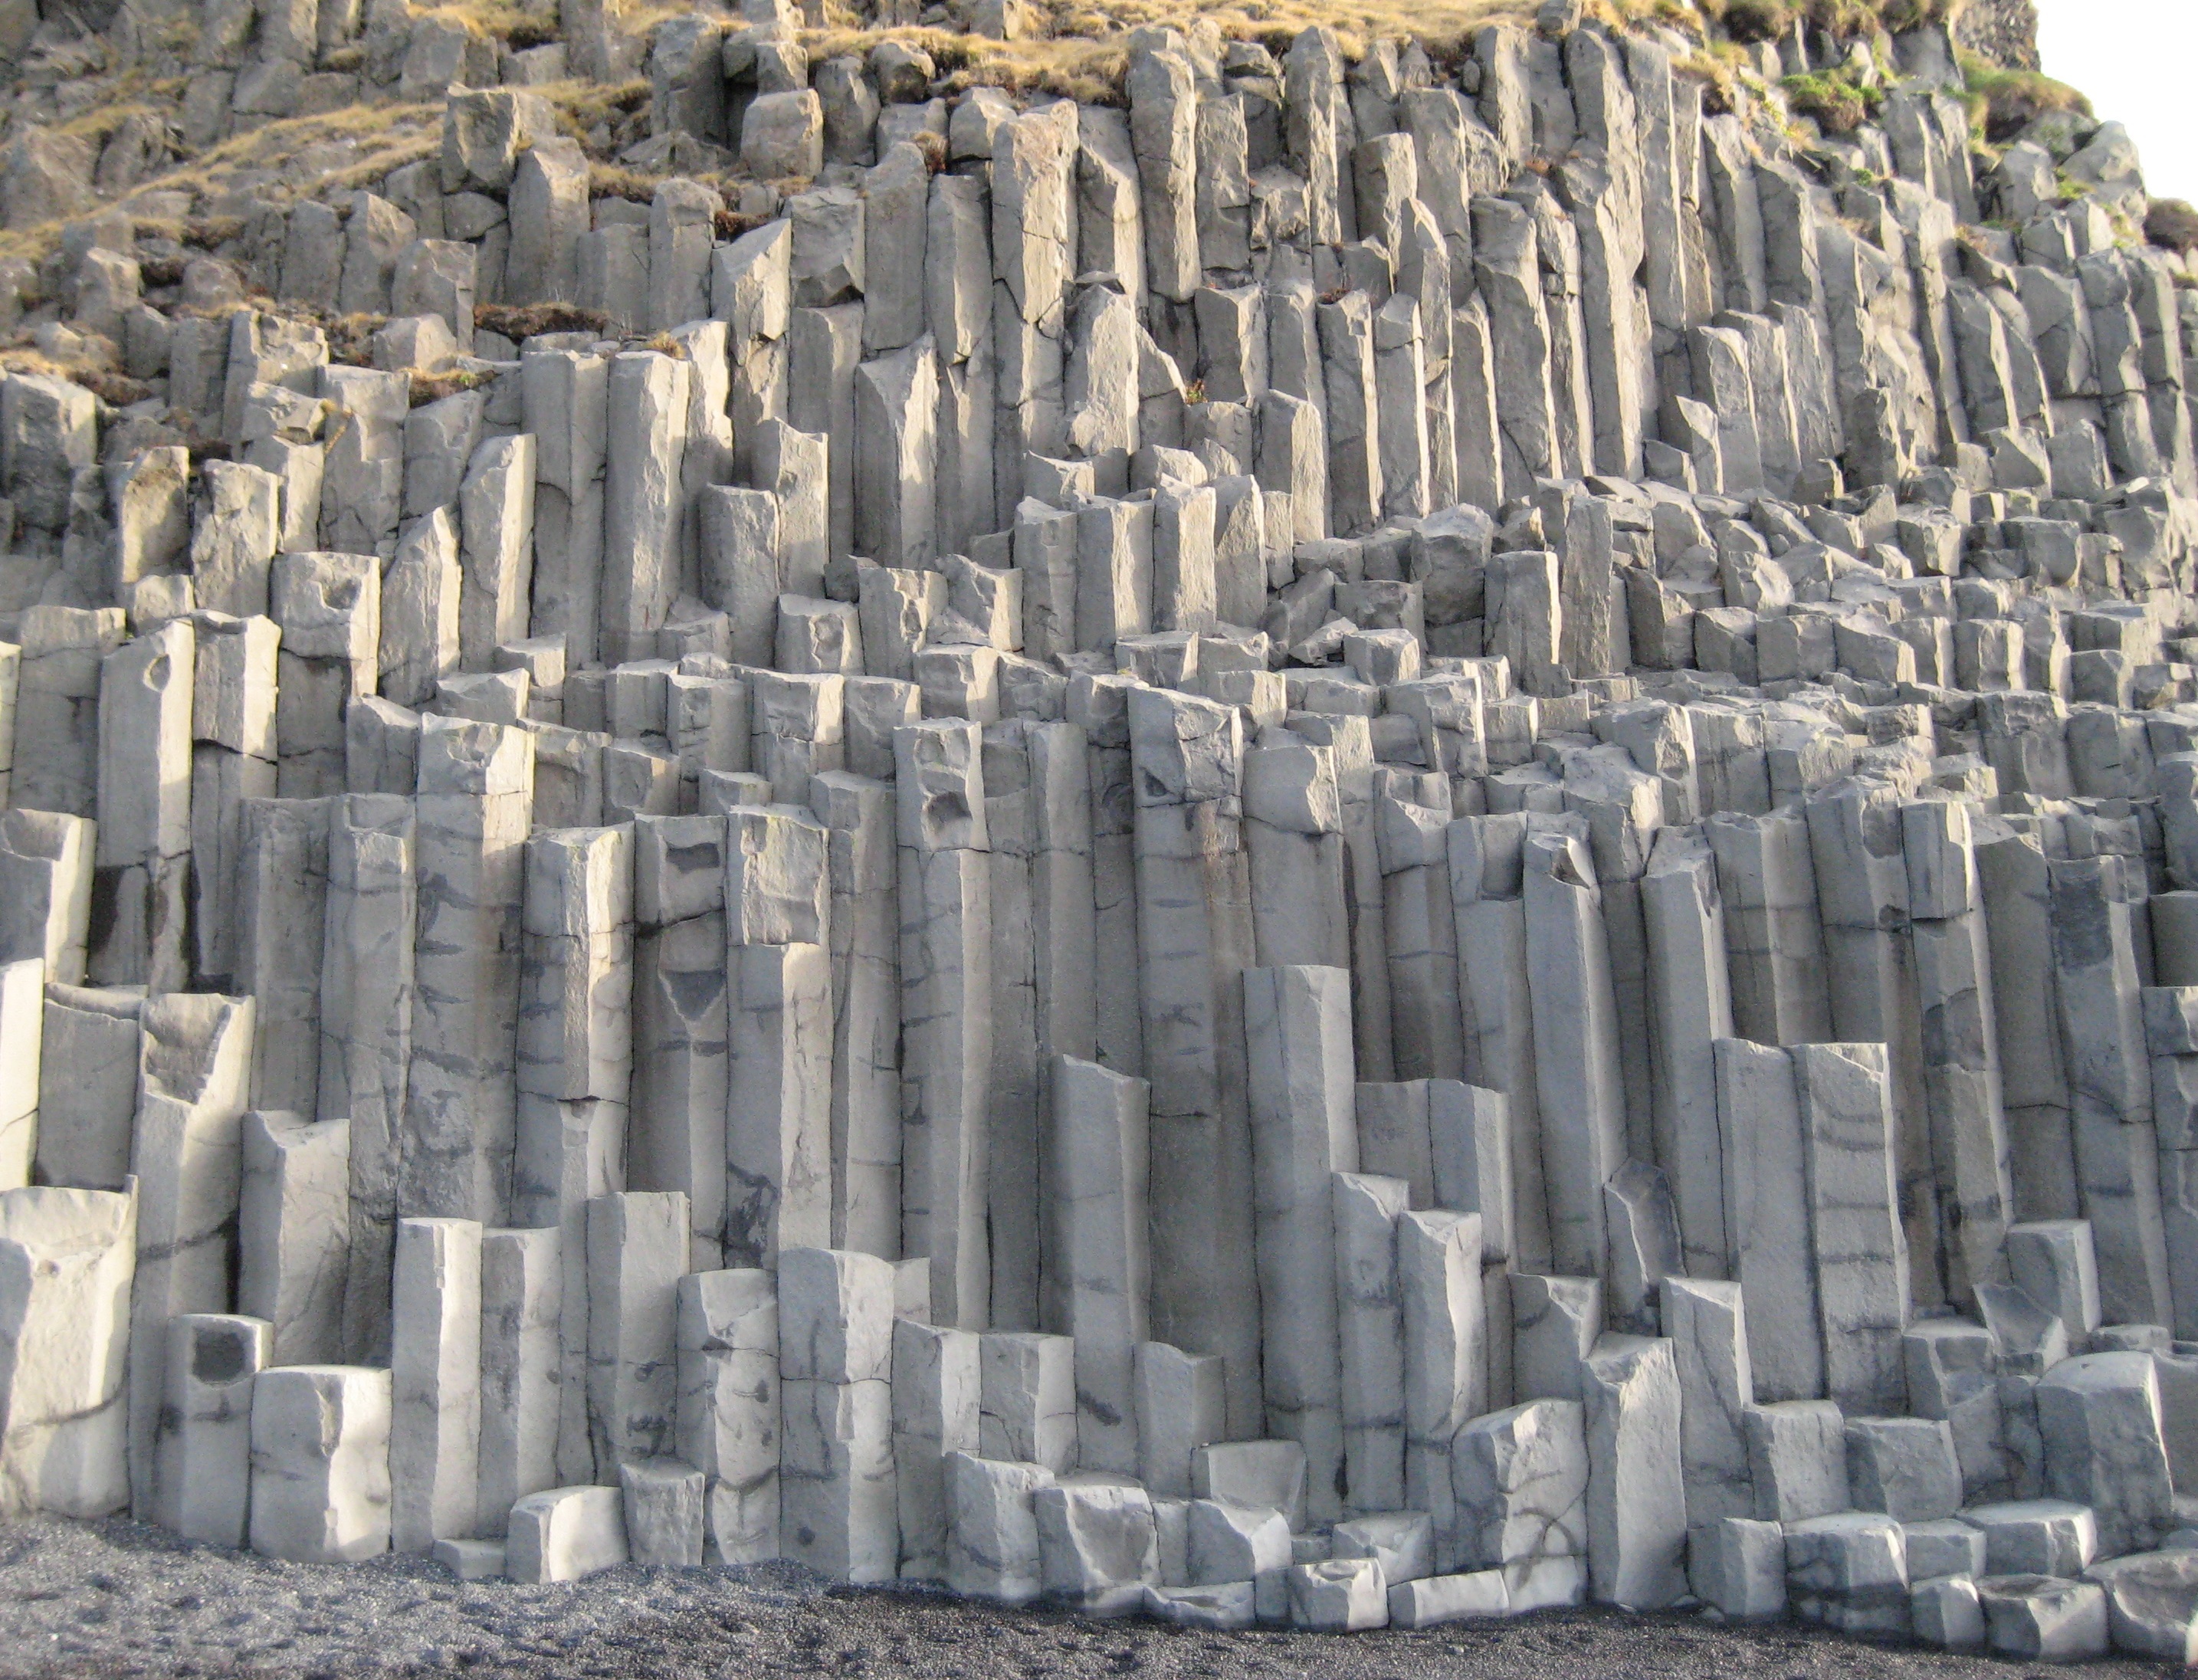 Шестигранные базальтовые колонны на Южном побережье Исландии, вблизи скалы Дирхолаэй.